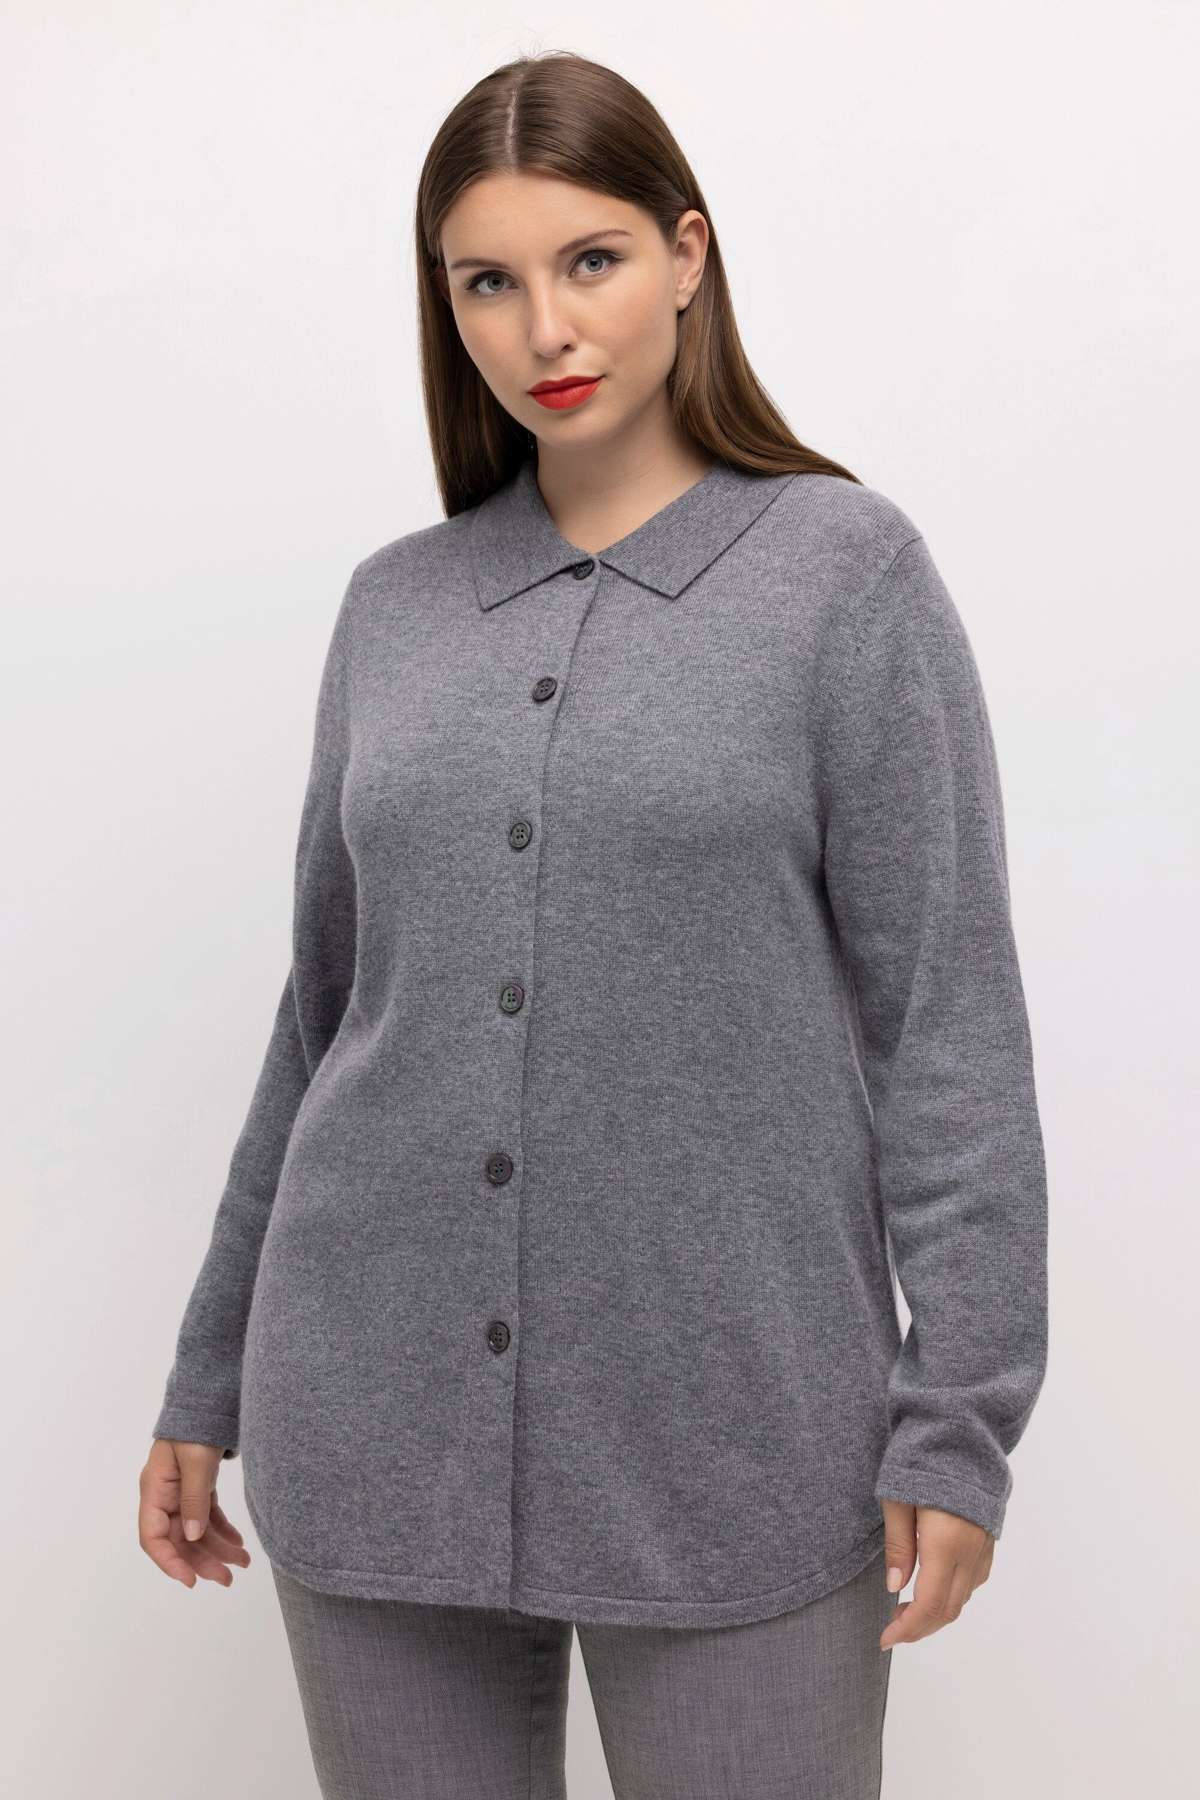 Вязаный свитер, пуловер, элегантная рубашка из смесовой шерсти, воротник-стойка, длинный рукав